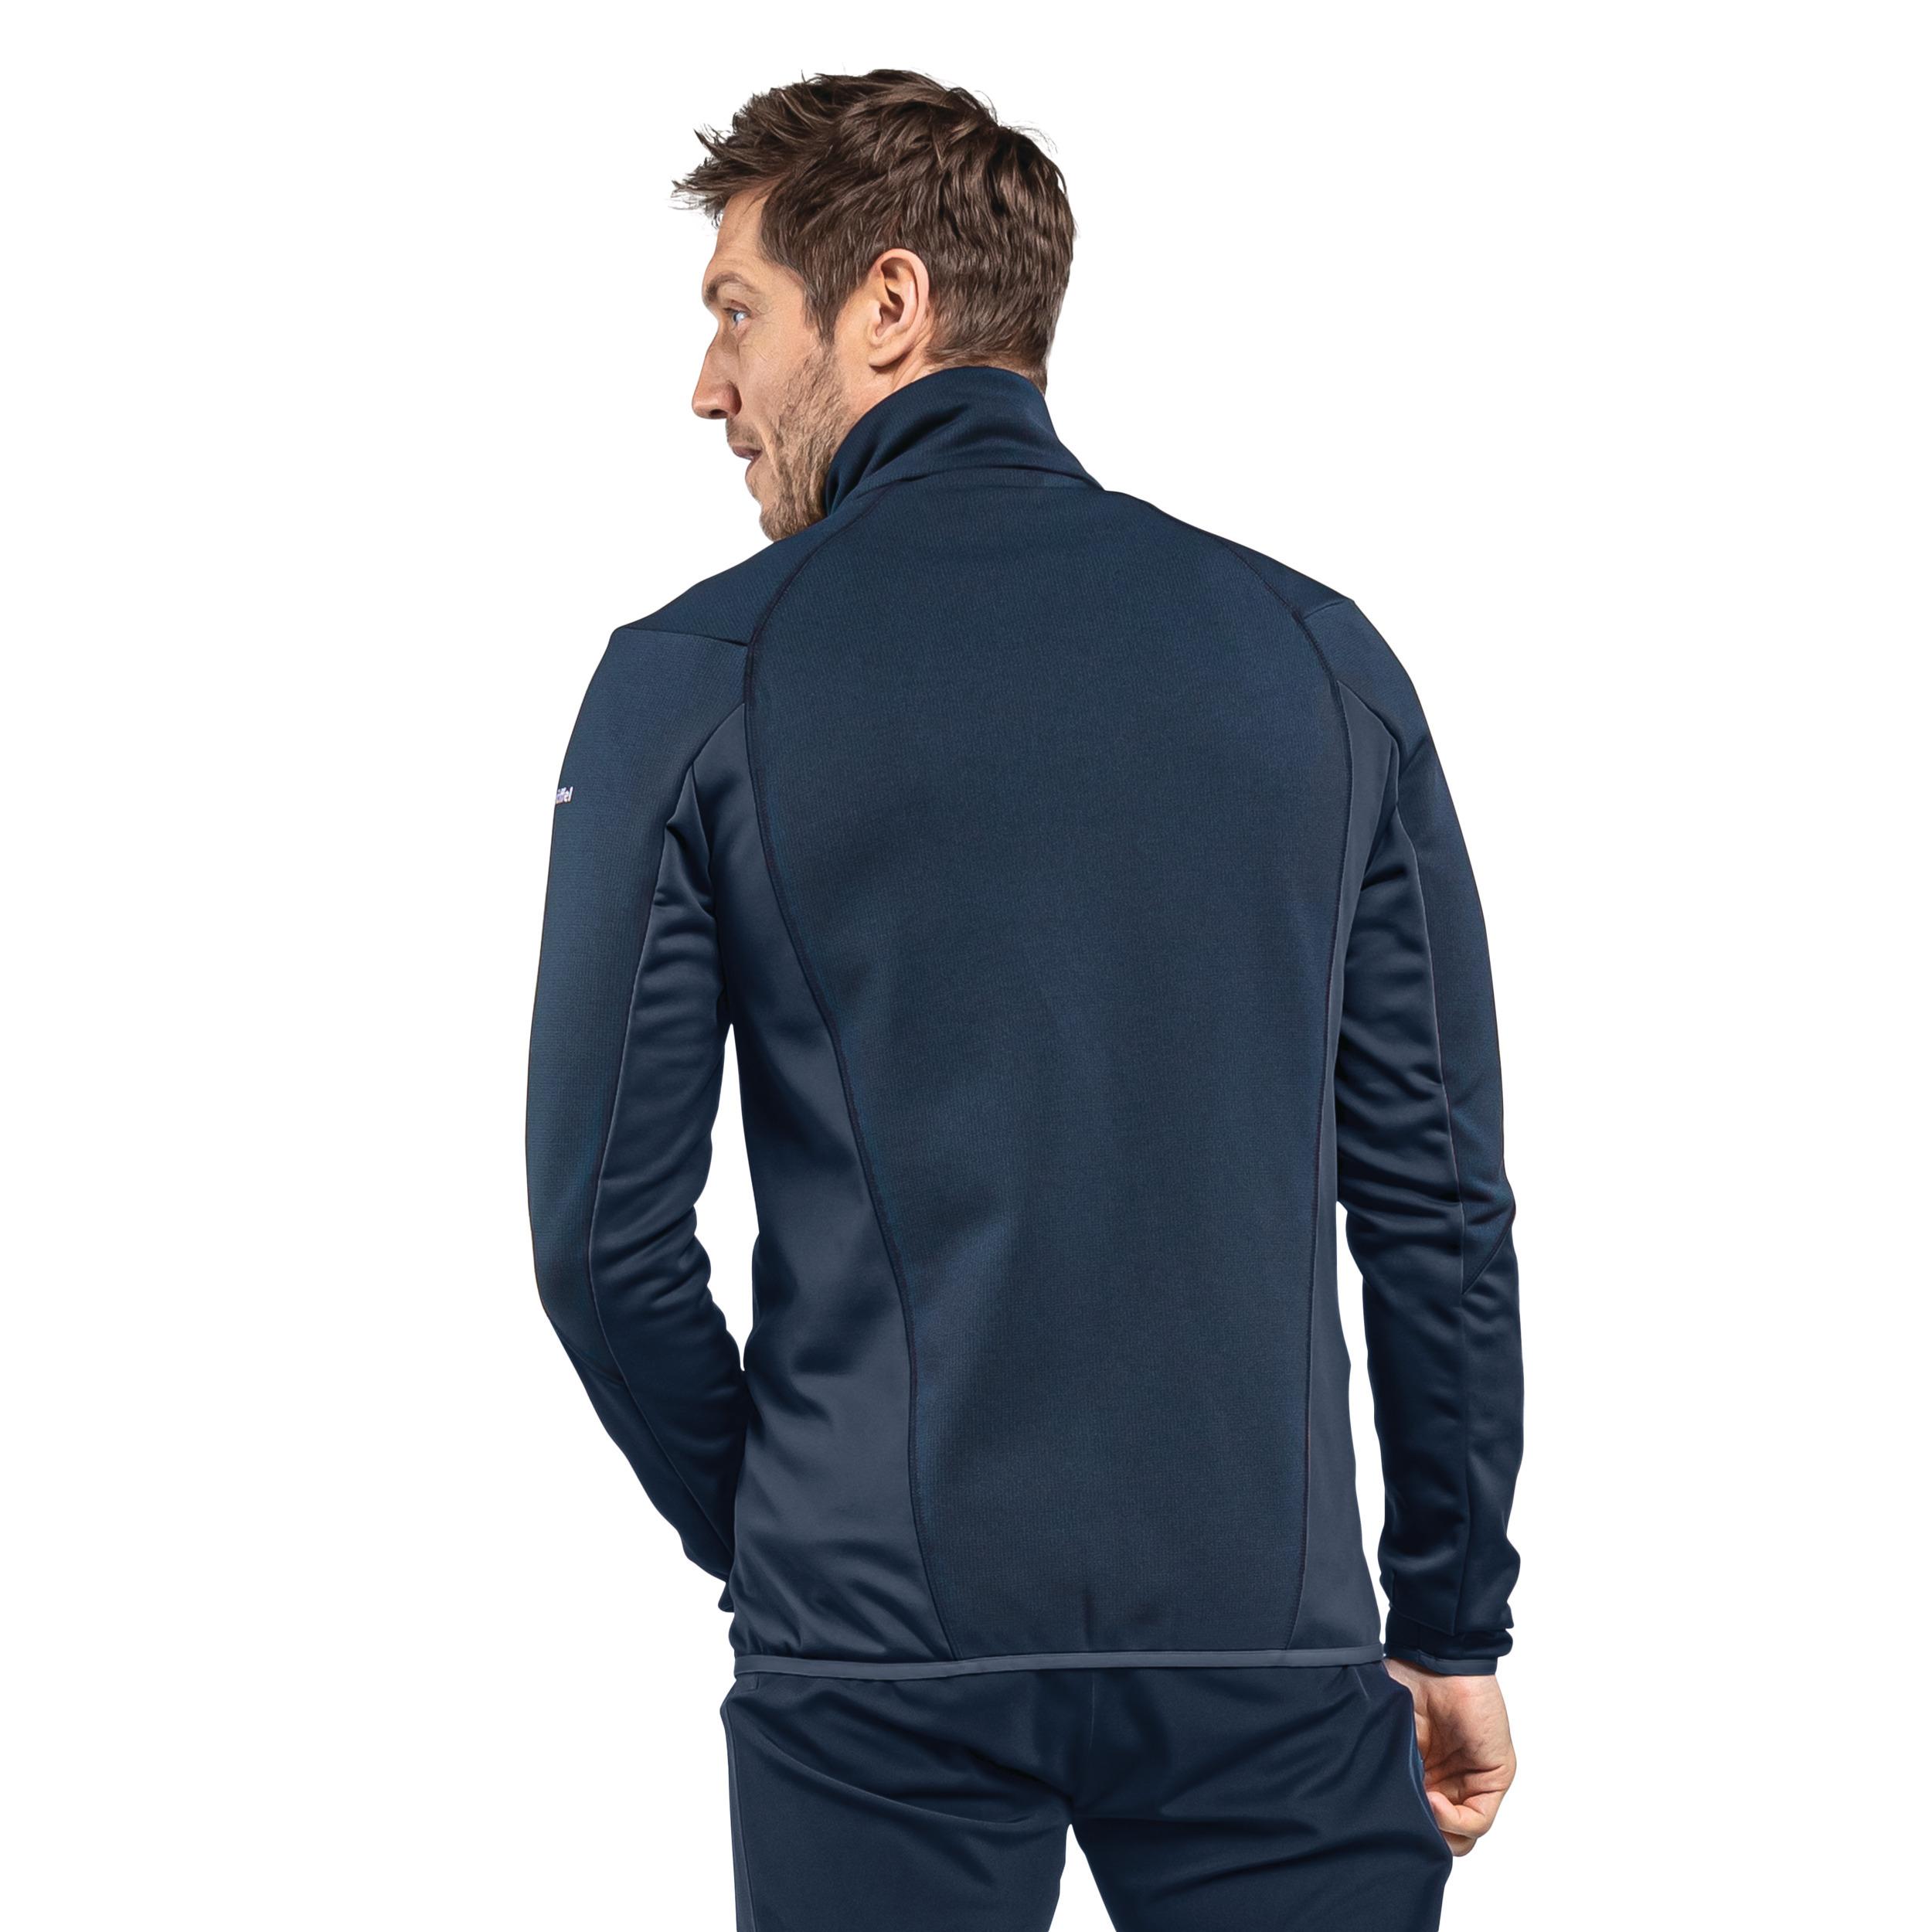 Shop Lodron im Online SportScheck Jacket Herren von kaufen blazer Fleecejacke Schöffel M Fleece navy